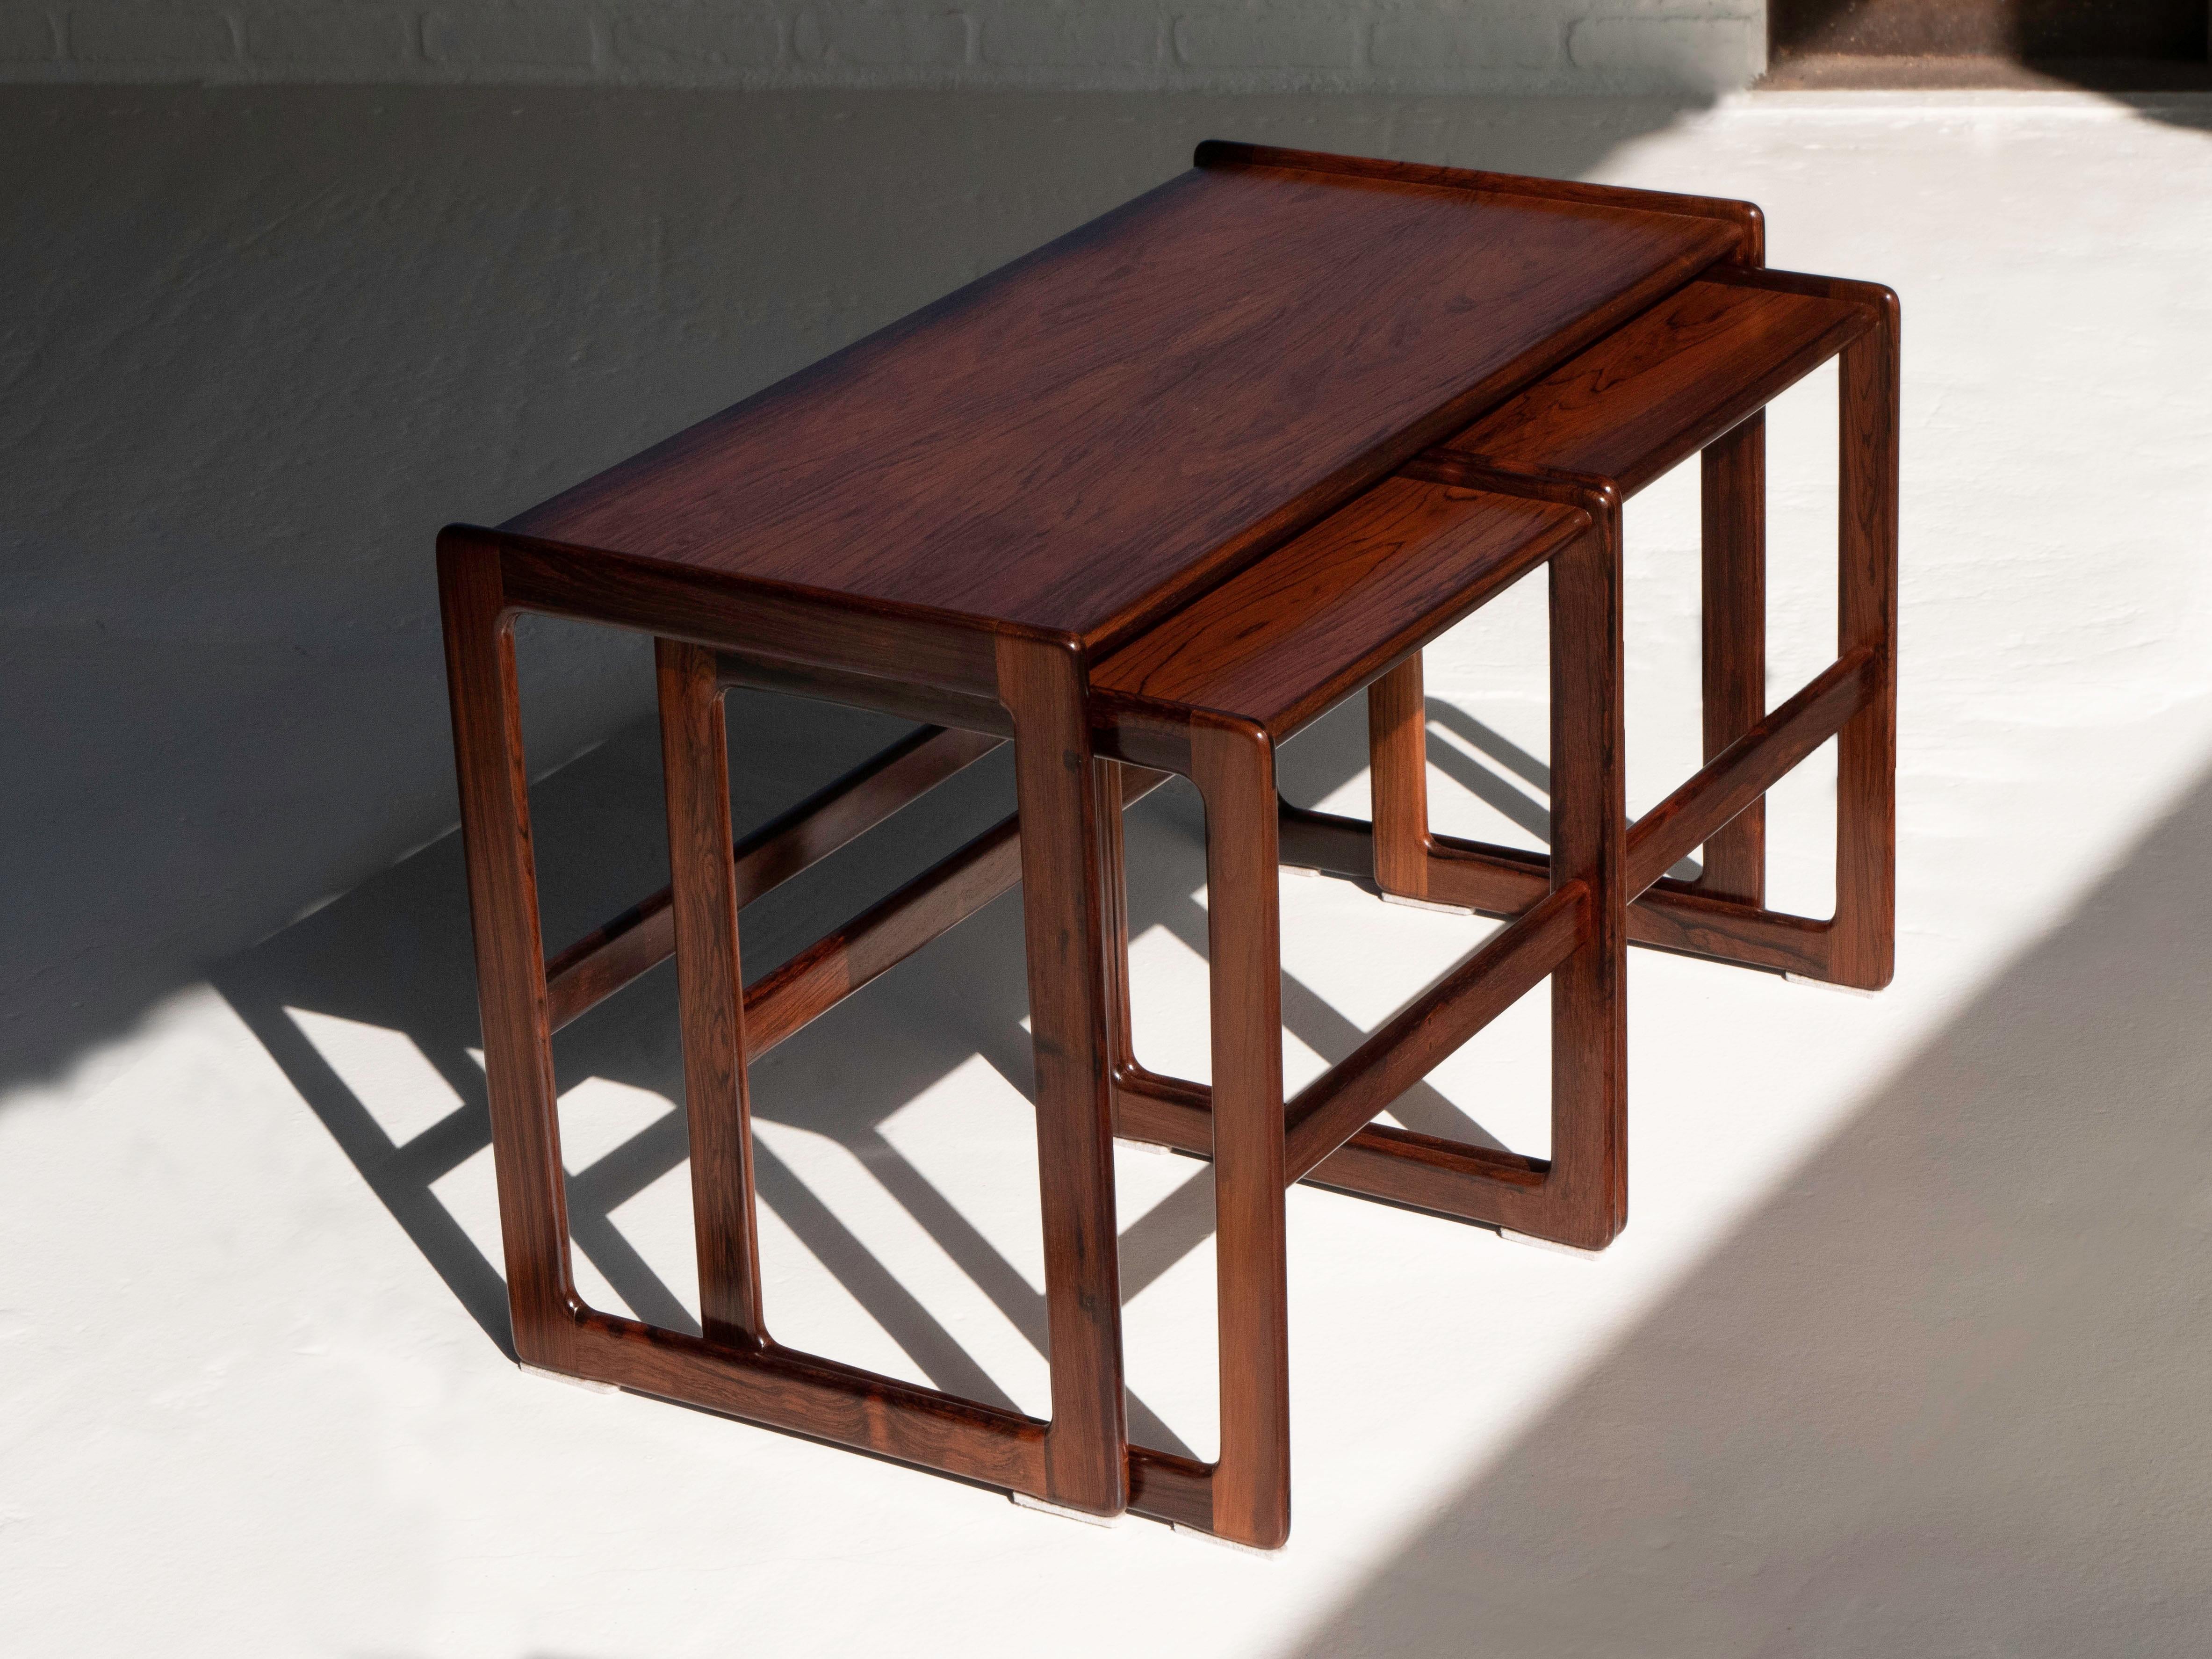 Ensemble de 3 tables gigognes en bois de rose du designer Arne Hovmand-Olsen.  Fabriqué par Mogens Kold au Danemark.  Les tables ont été refinies et sont en excellent état.  Toutes sont structurellement saines et portent les marques du